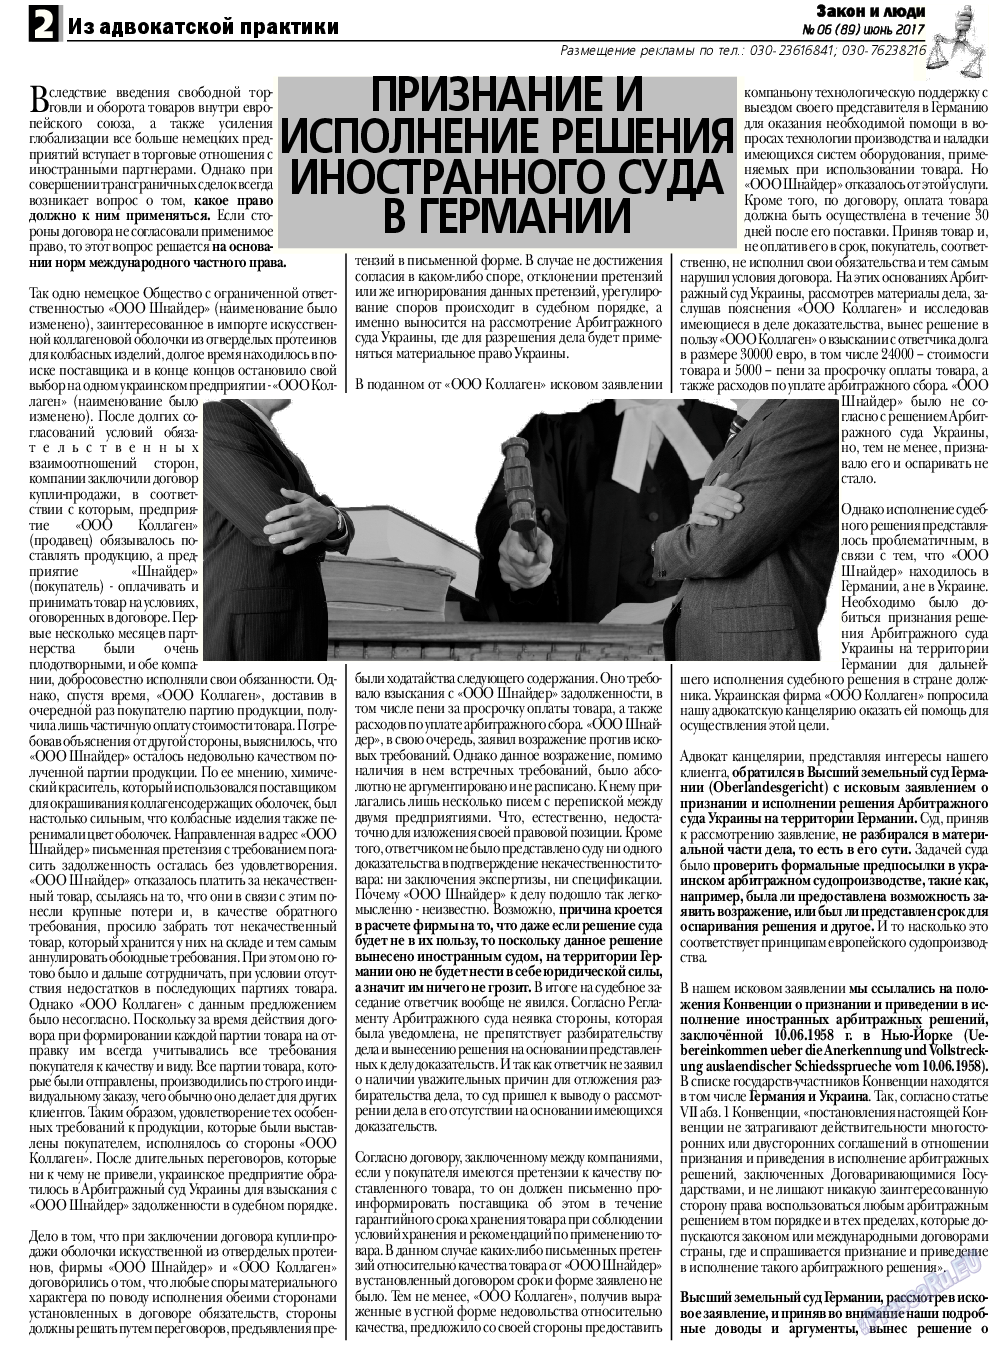 Закон и люди, газета. 2017 №6 стр.2